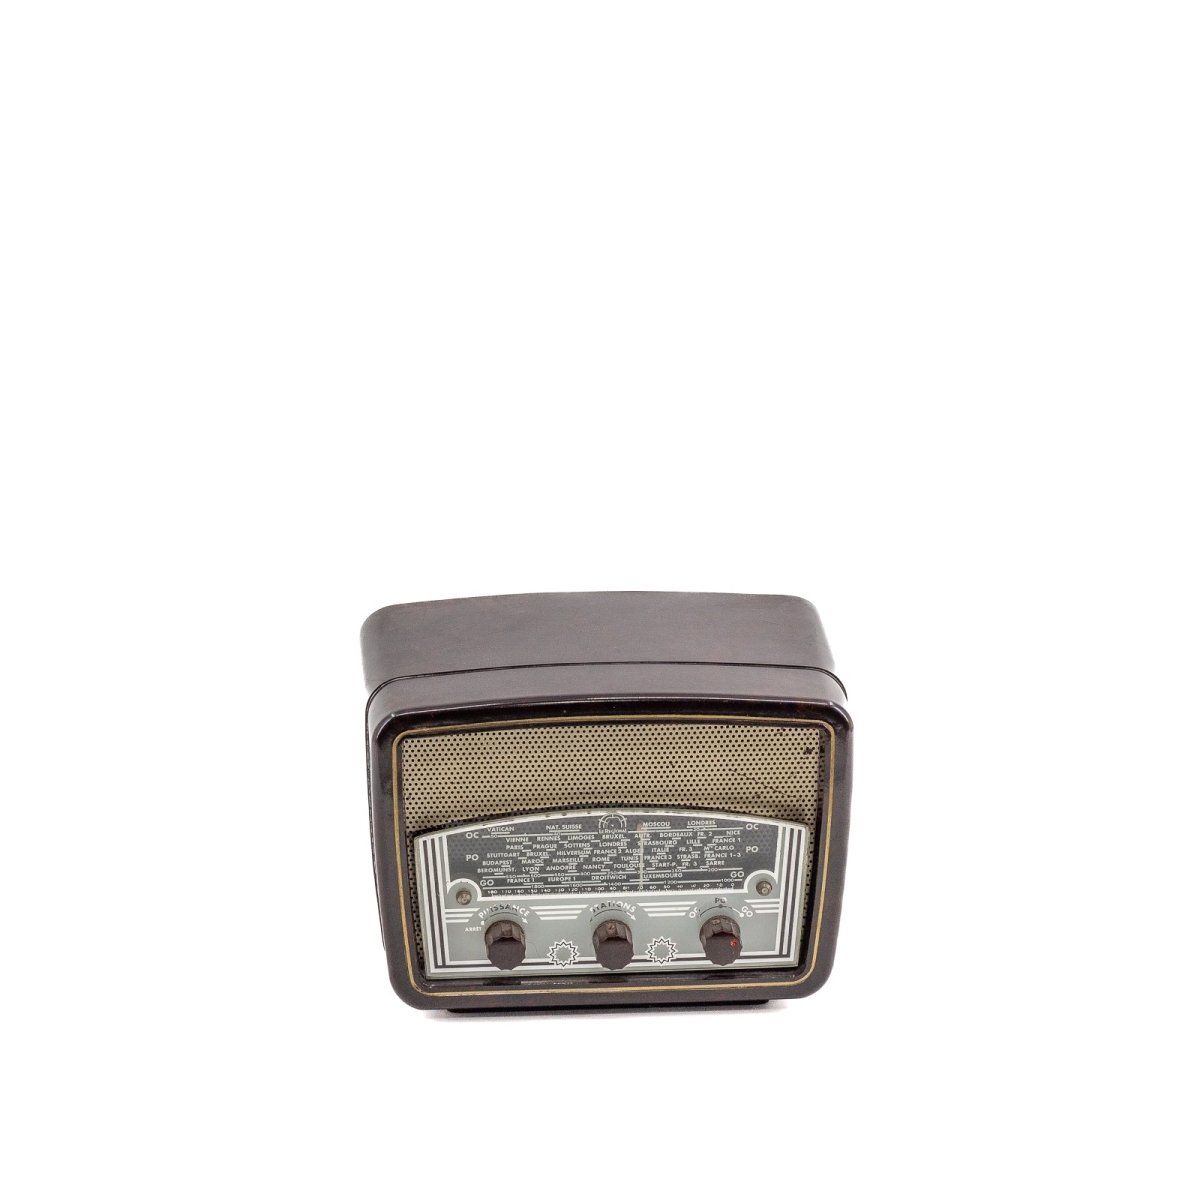 Radio Bluetooth Le Regional Vintage 50’S enceinte connectée française haut de gamme absolument prodige radio vintage